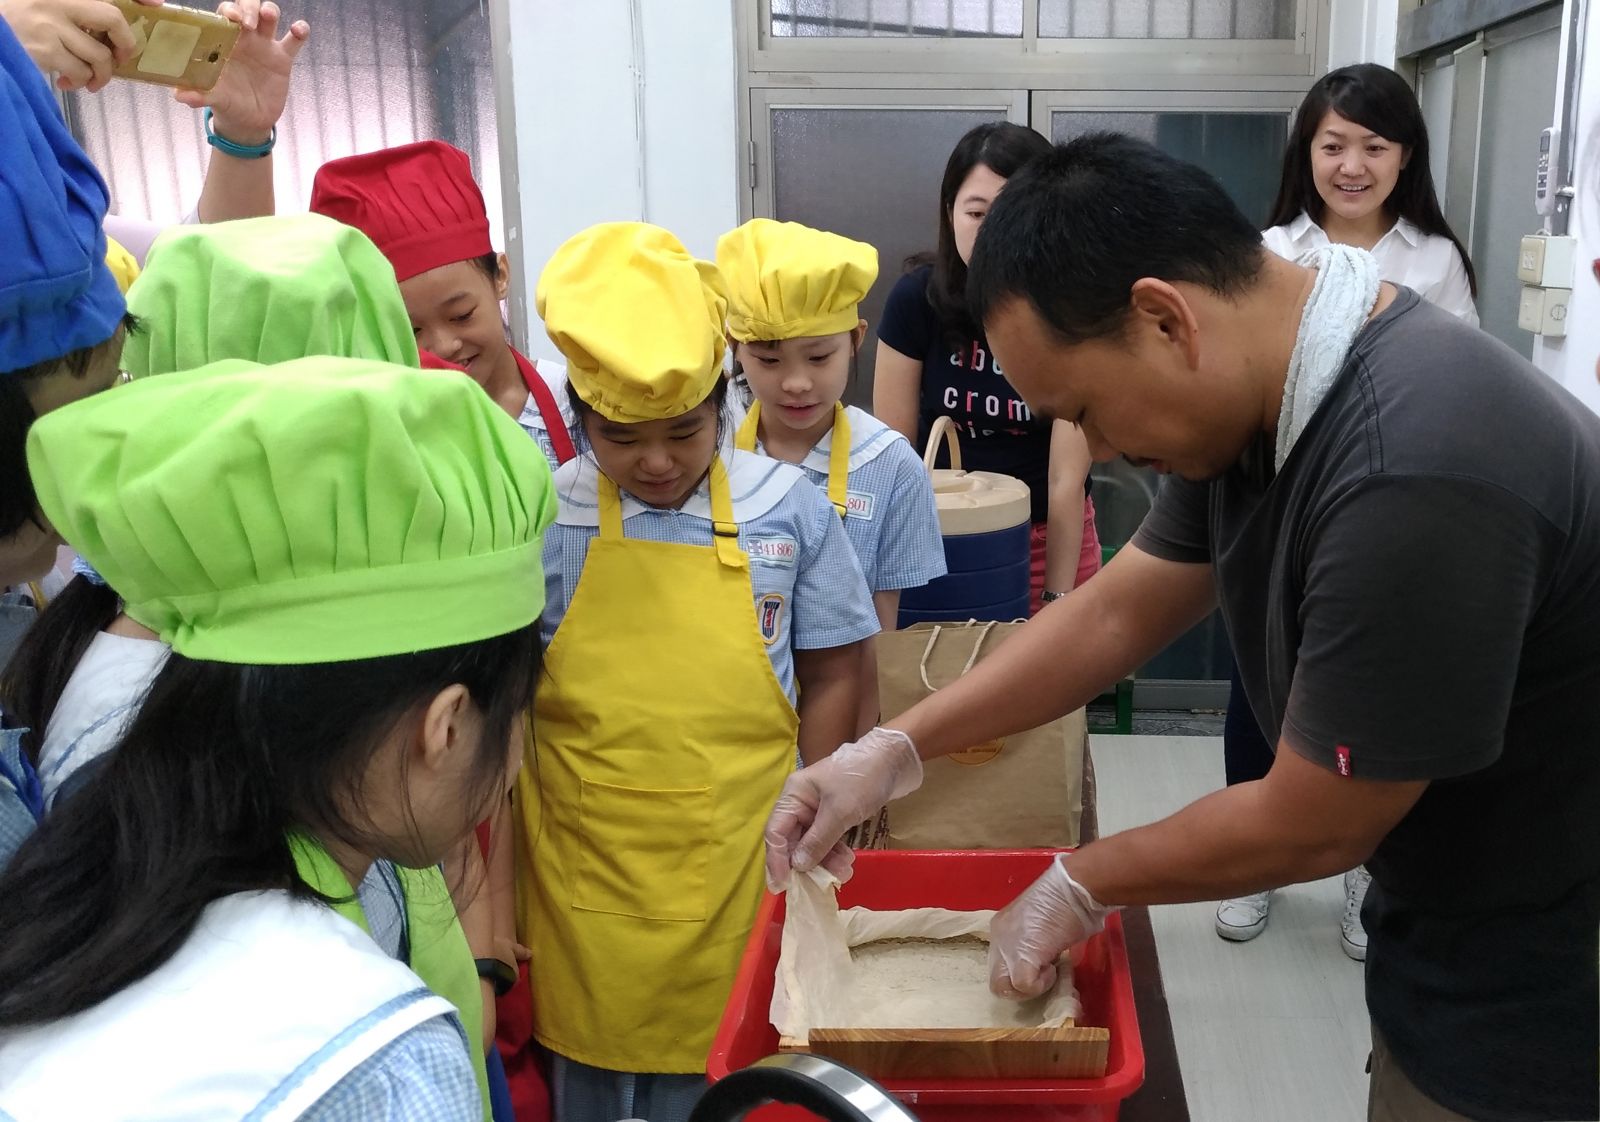 後埔國小學生神情專注的看著老師示範豆腐的製作方法